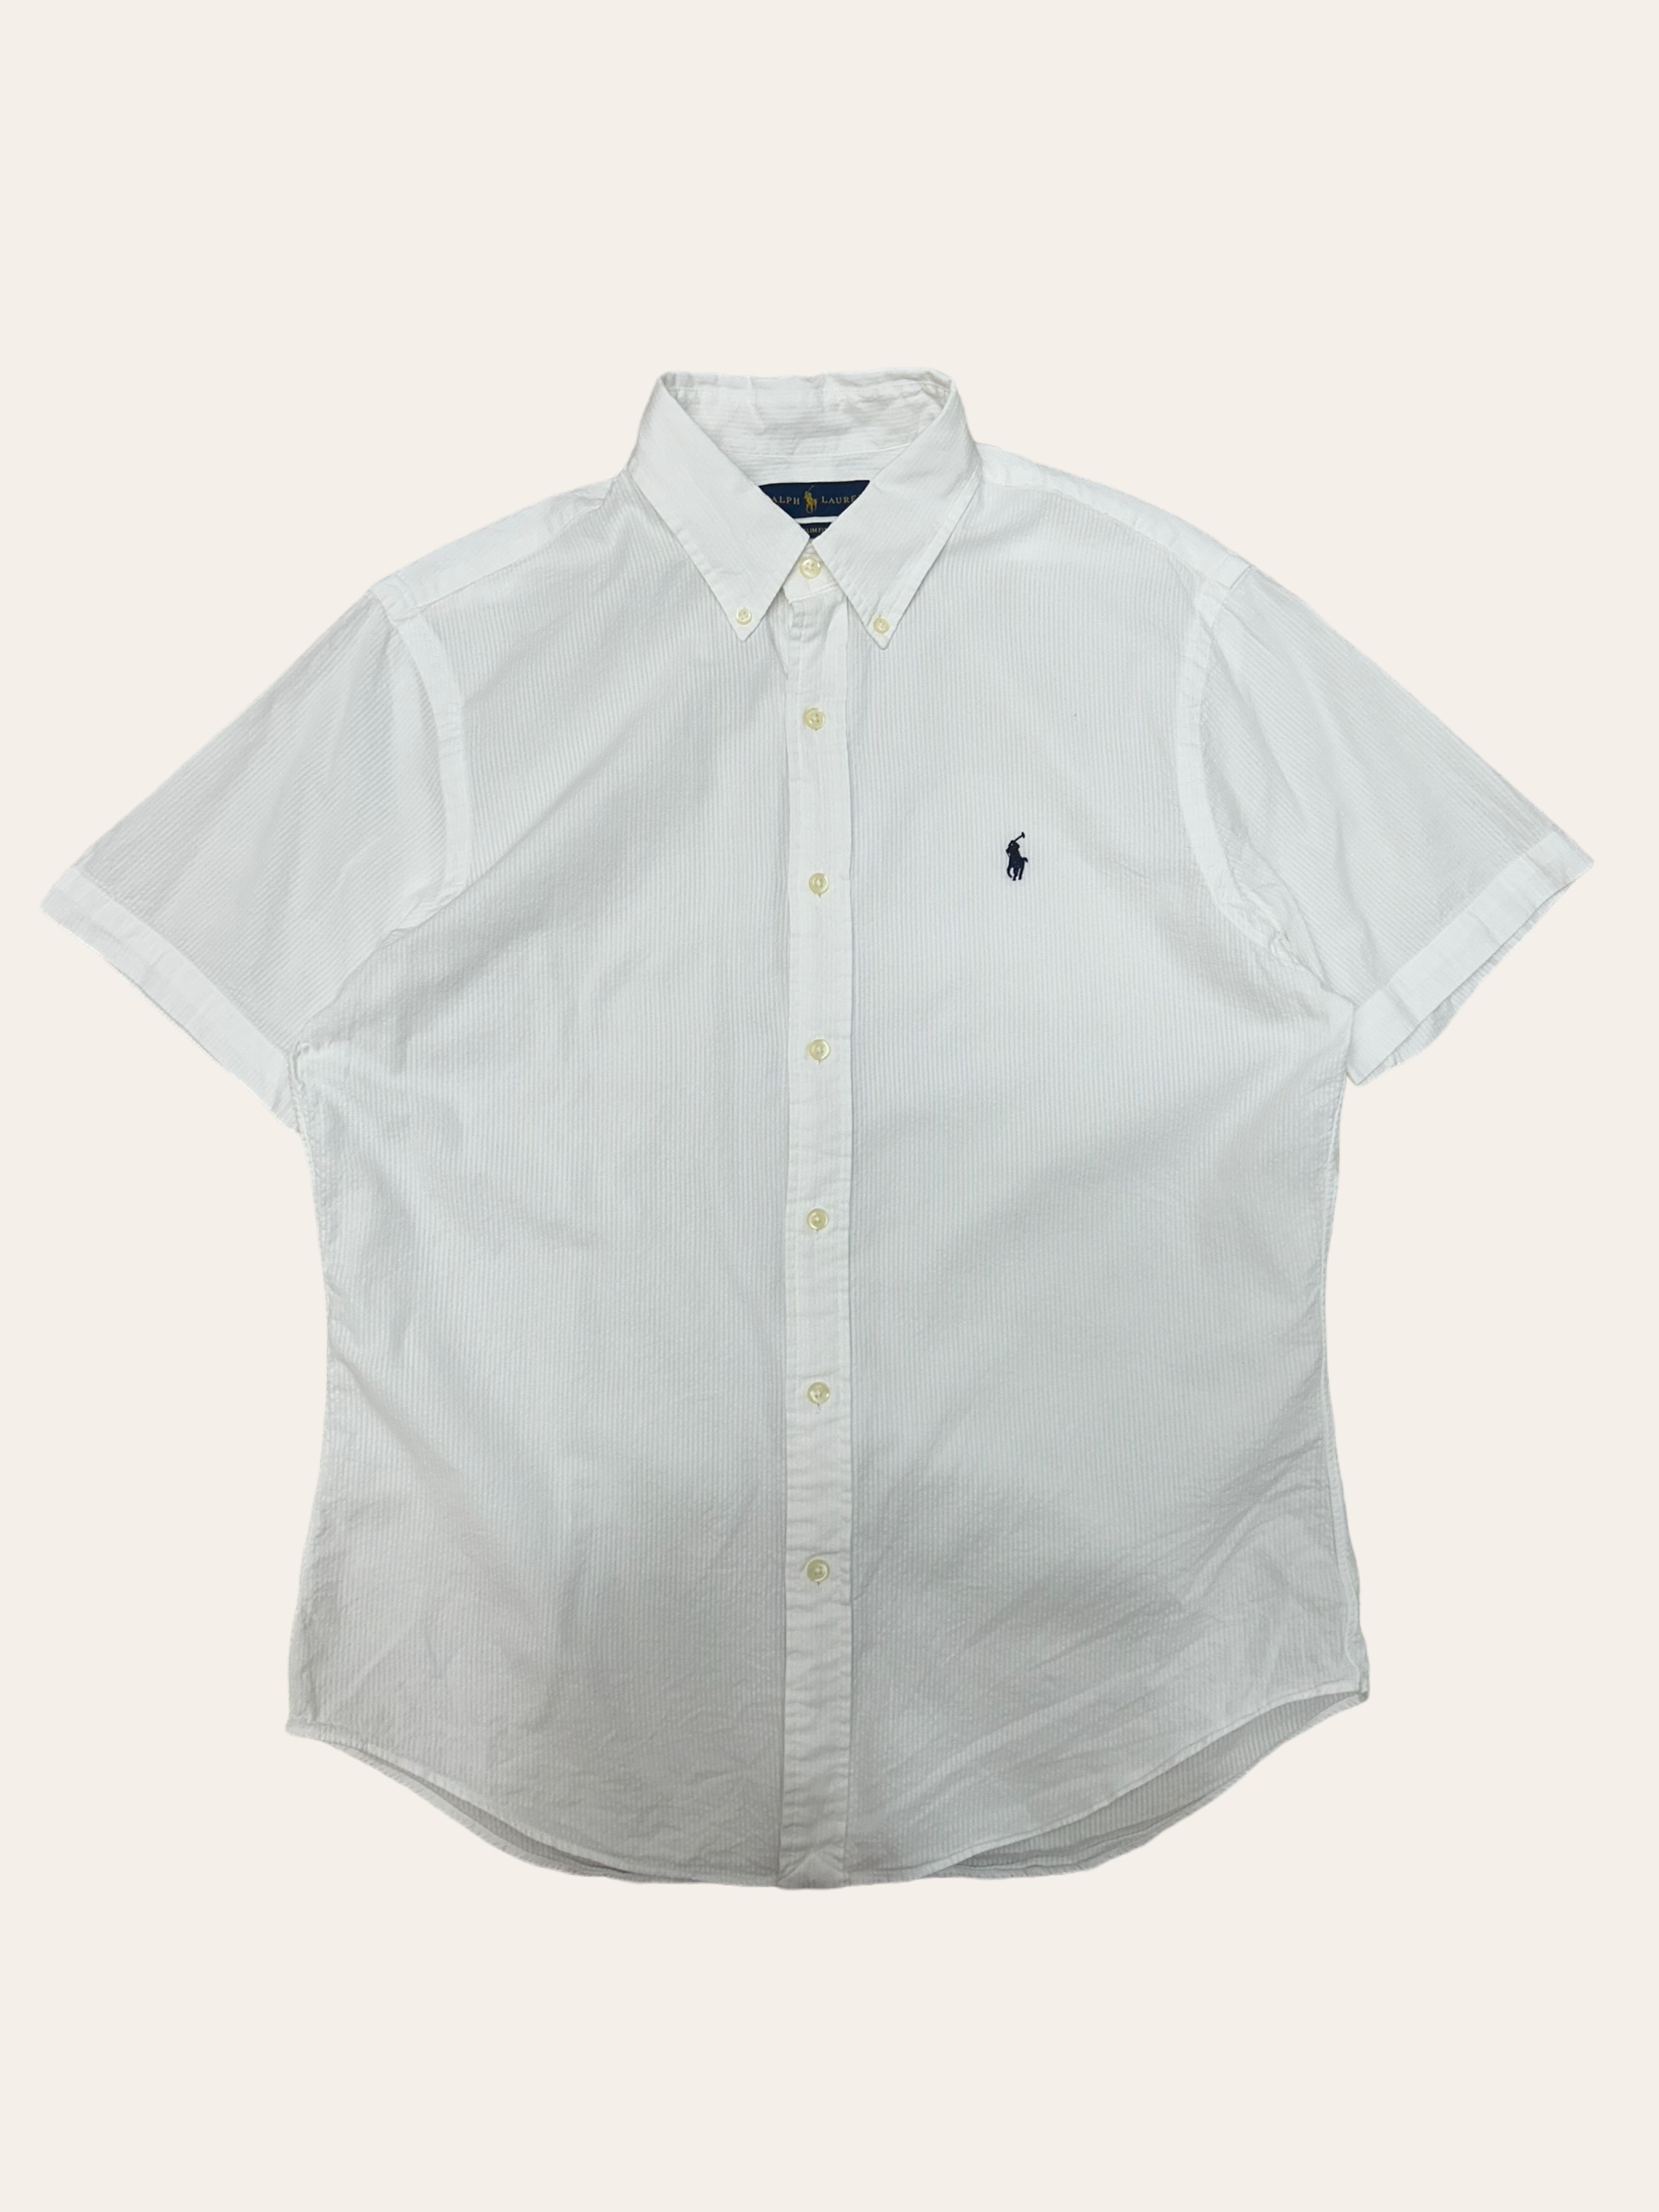 (From USA)Polo ralph lauren white seersucker short sleeve shirt L